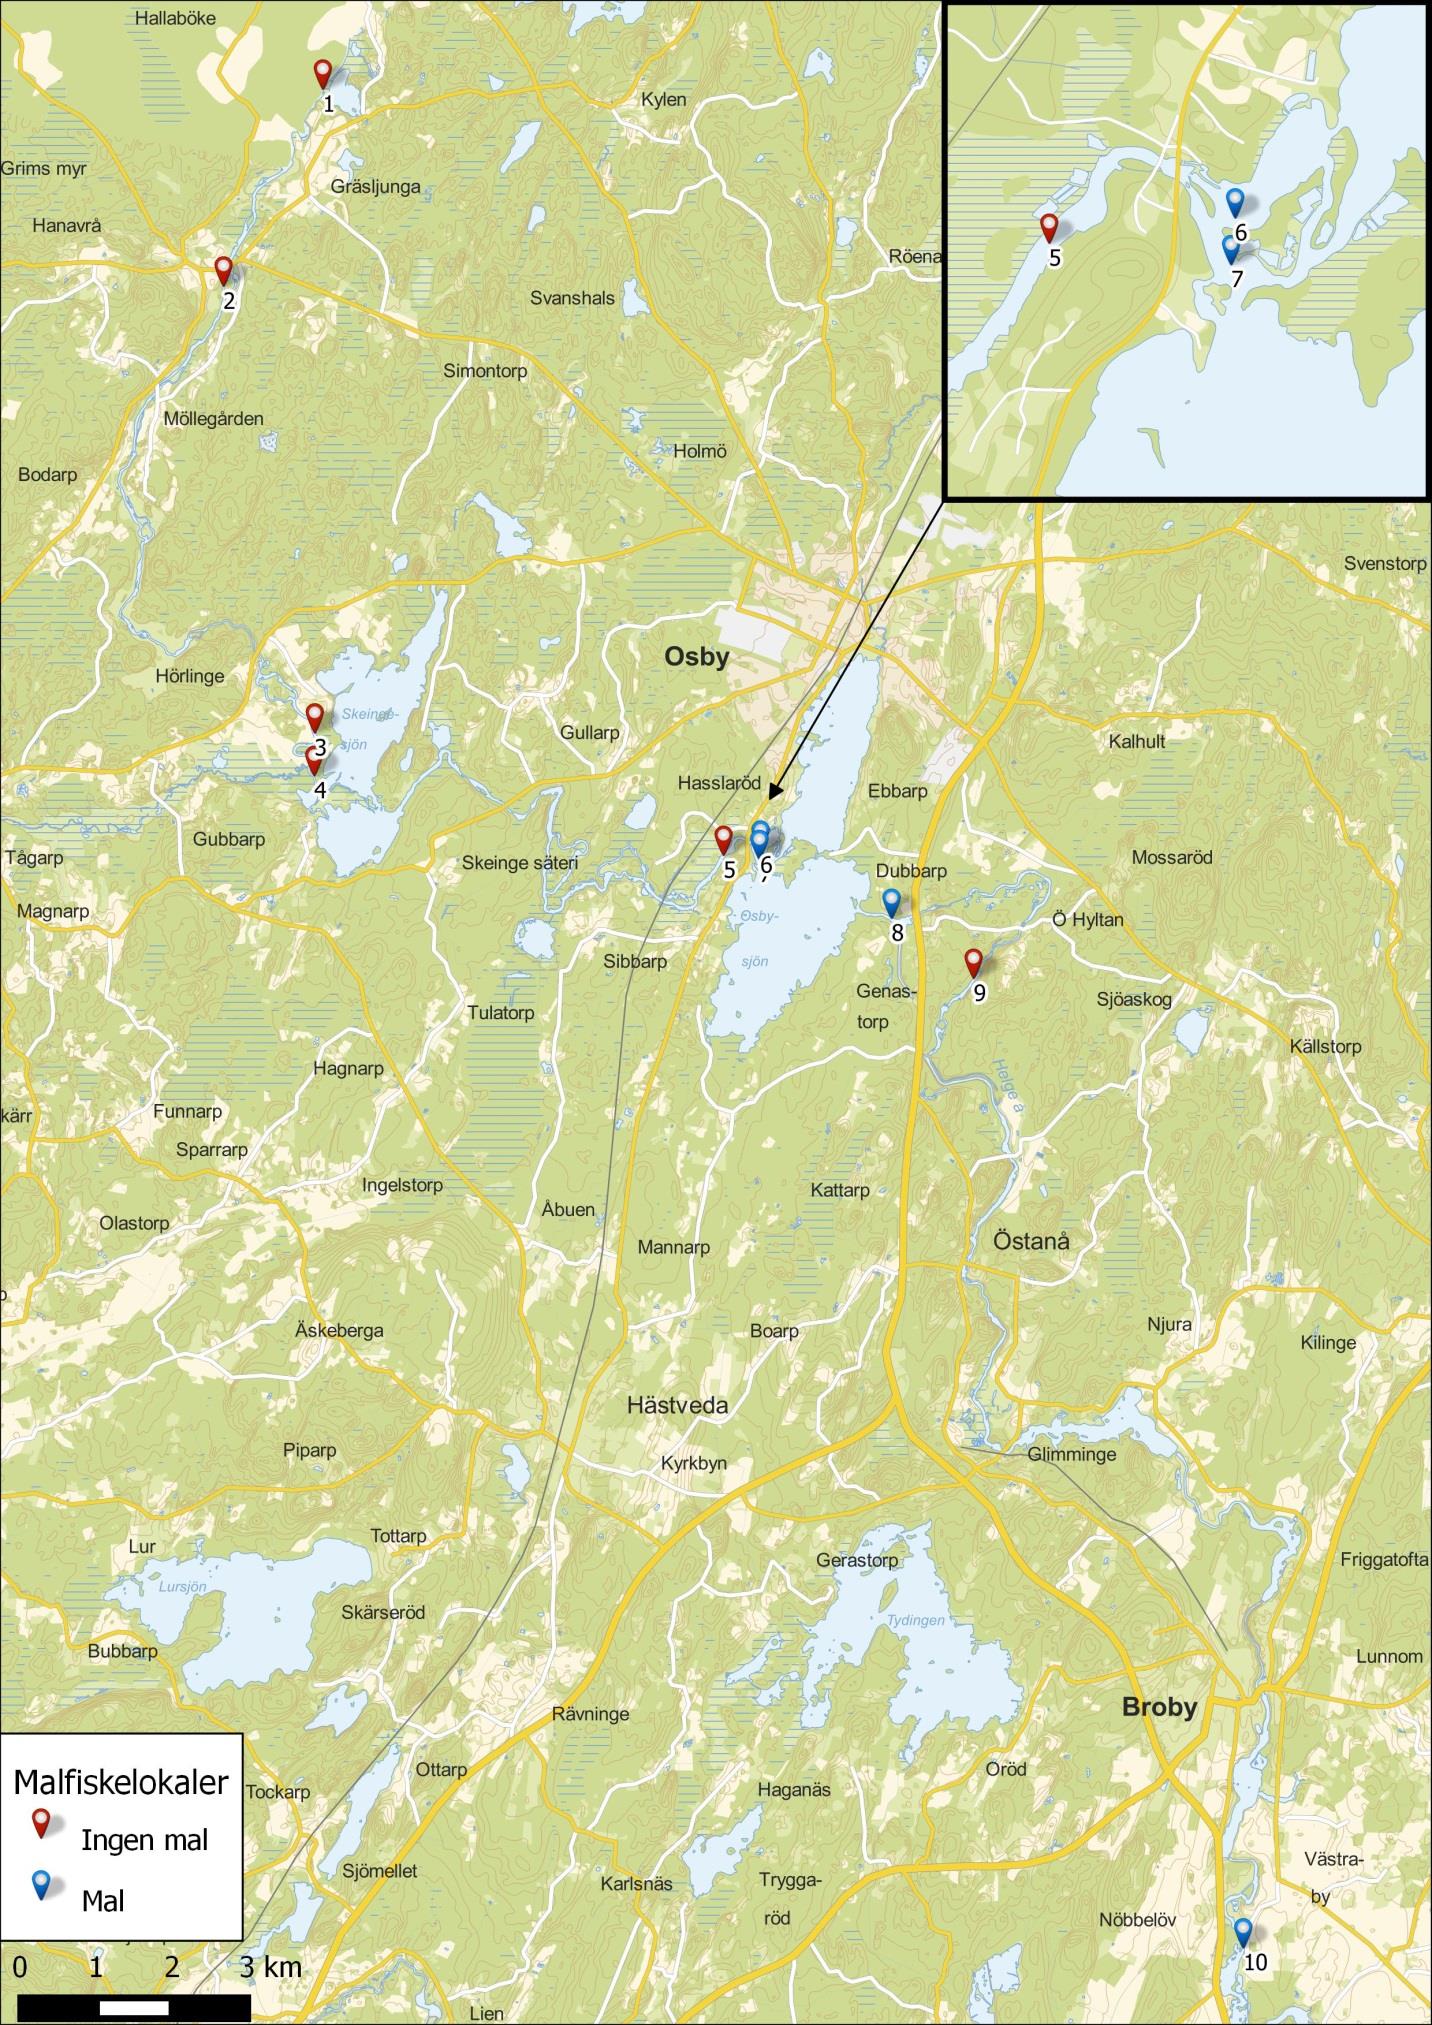 Figur 2. Kartan visar lokalerna 1-10 geografiska placeringar i övre delen av Helgeå.